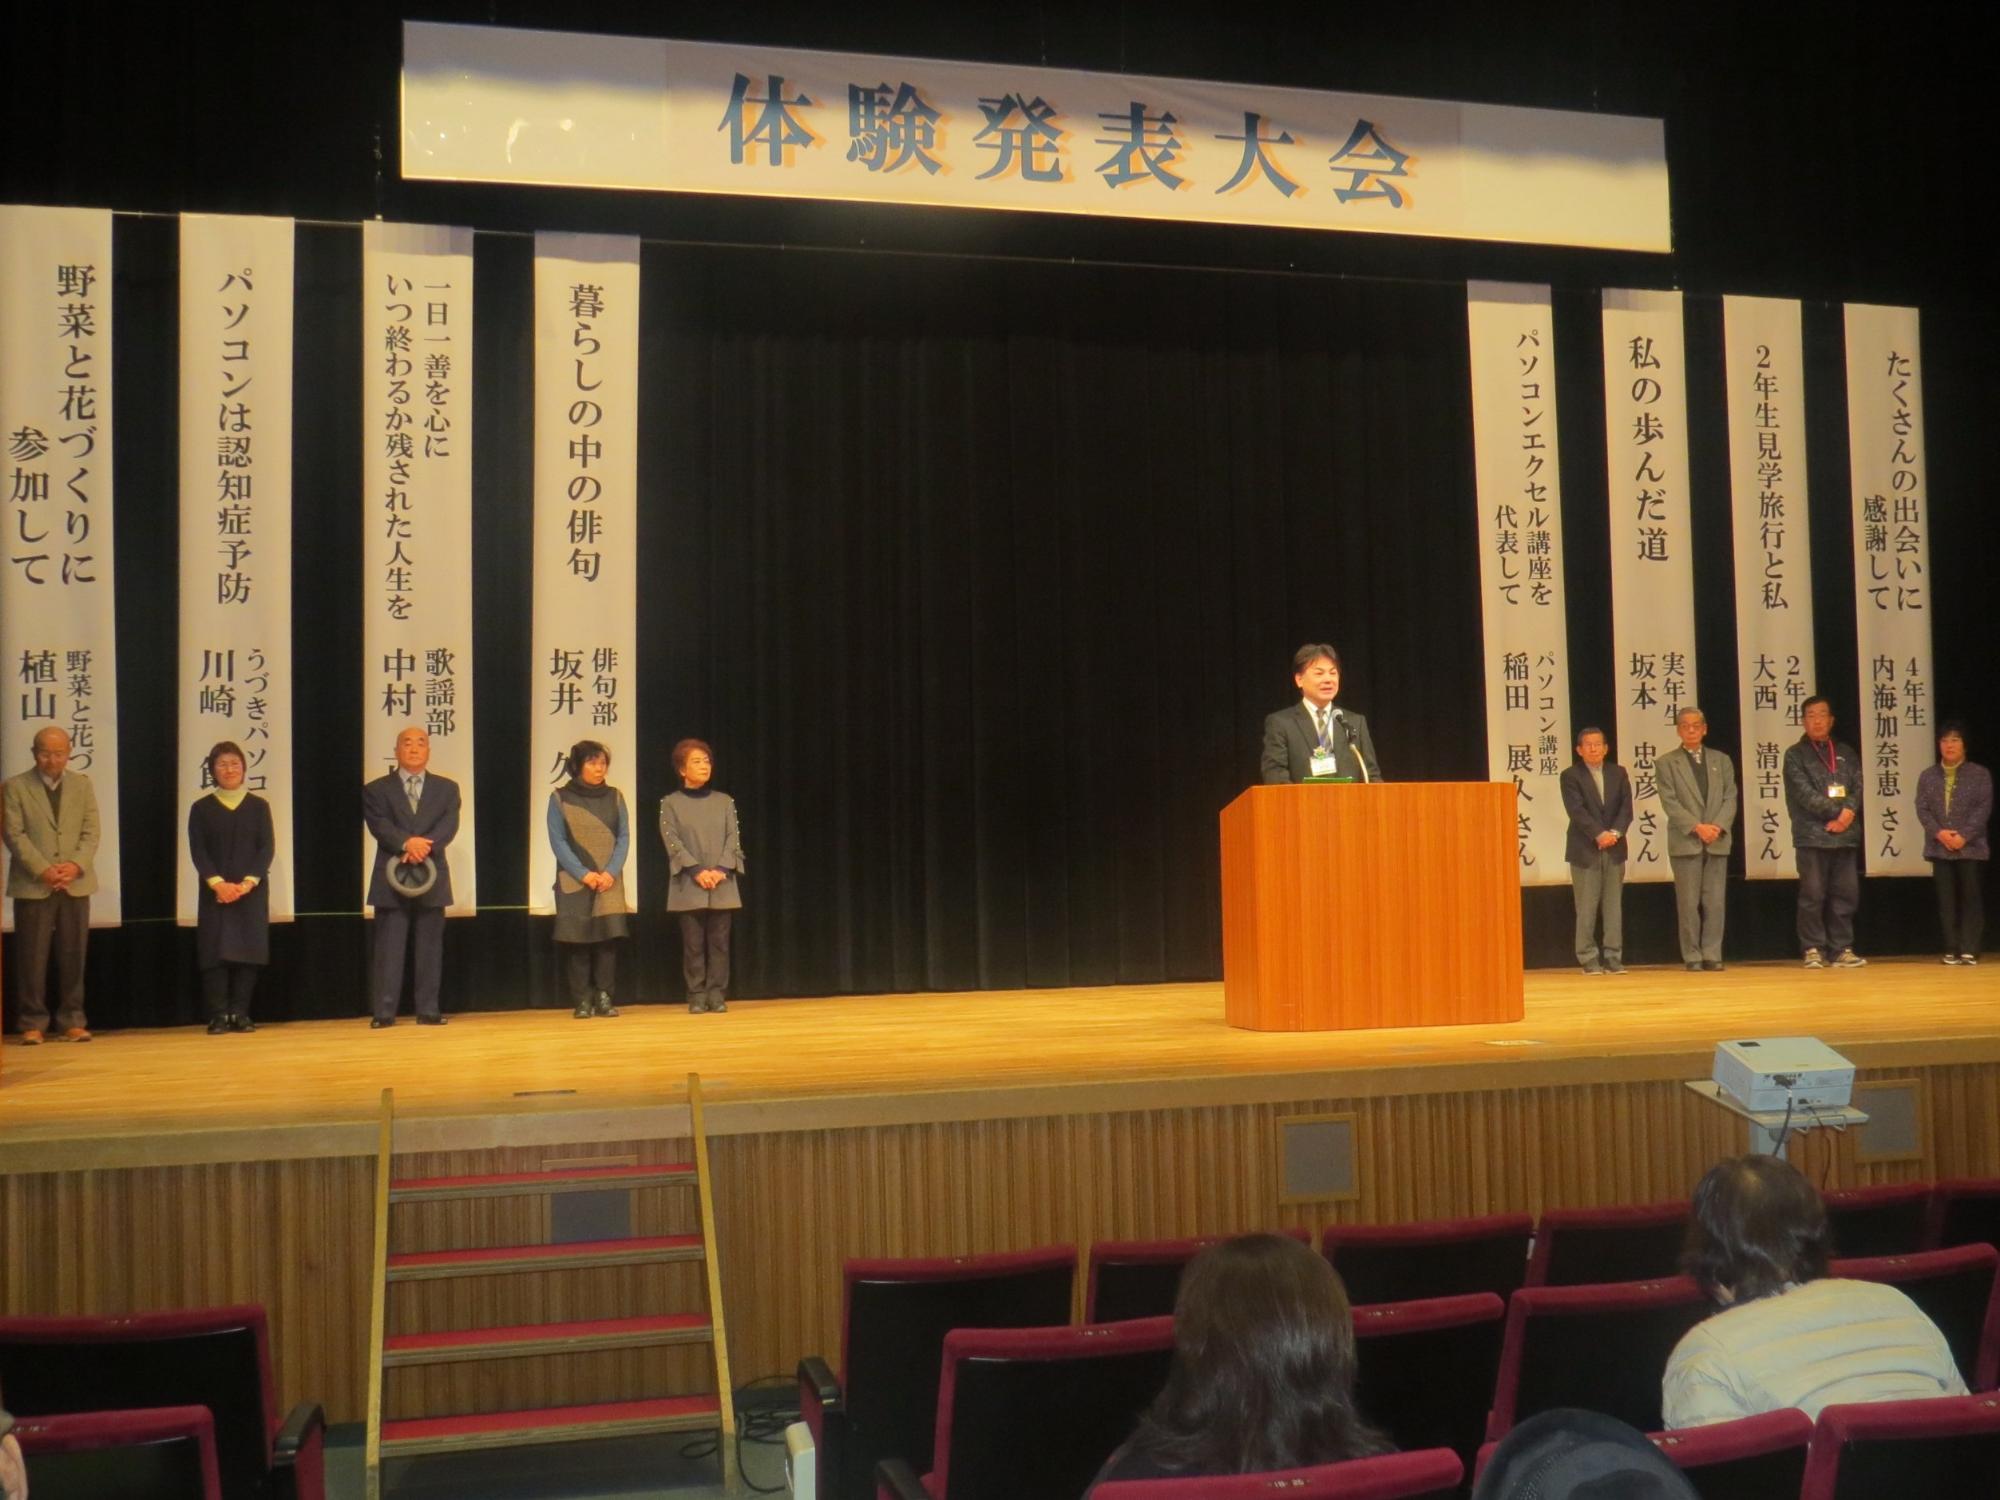 壇上で発表者全員が並び、中央で学遊館館長が話をしている写真